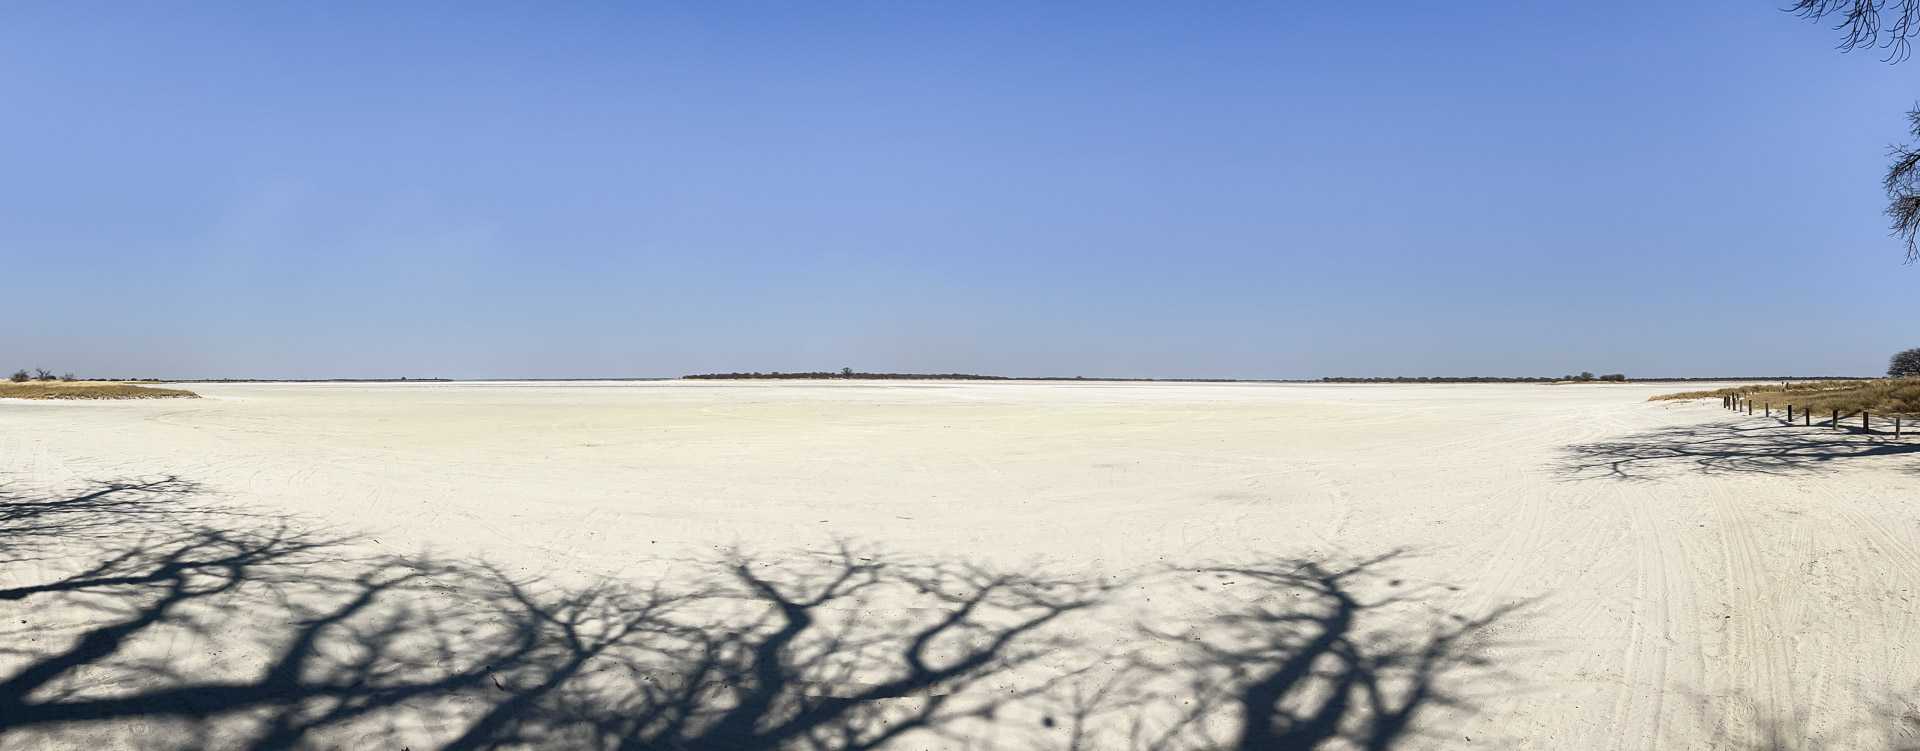 16.9.2022 - Baines Baobab, Kudiakam Pan